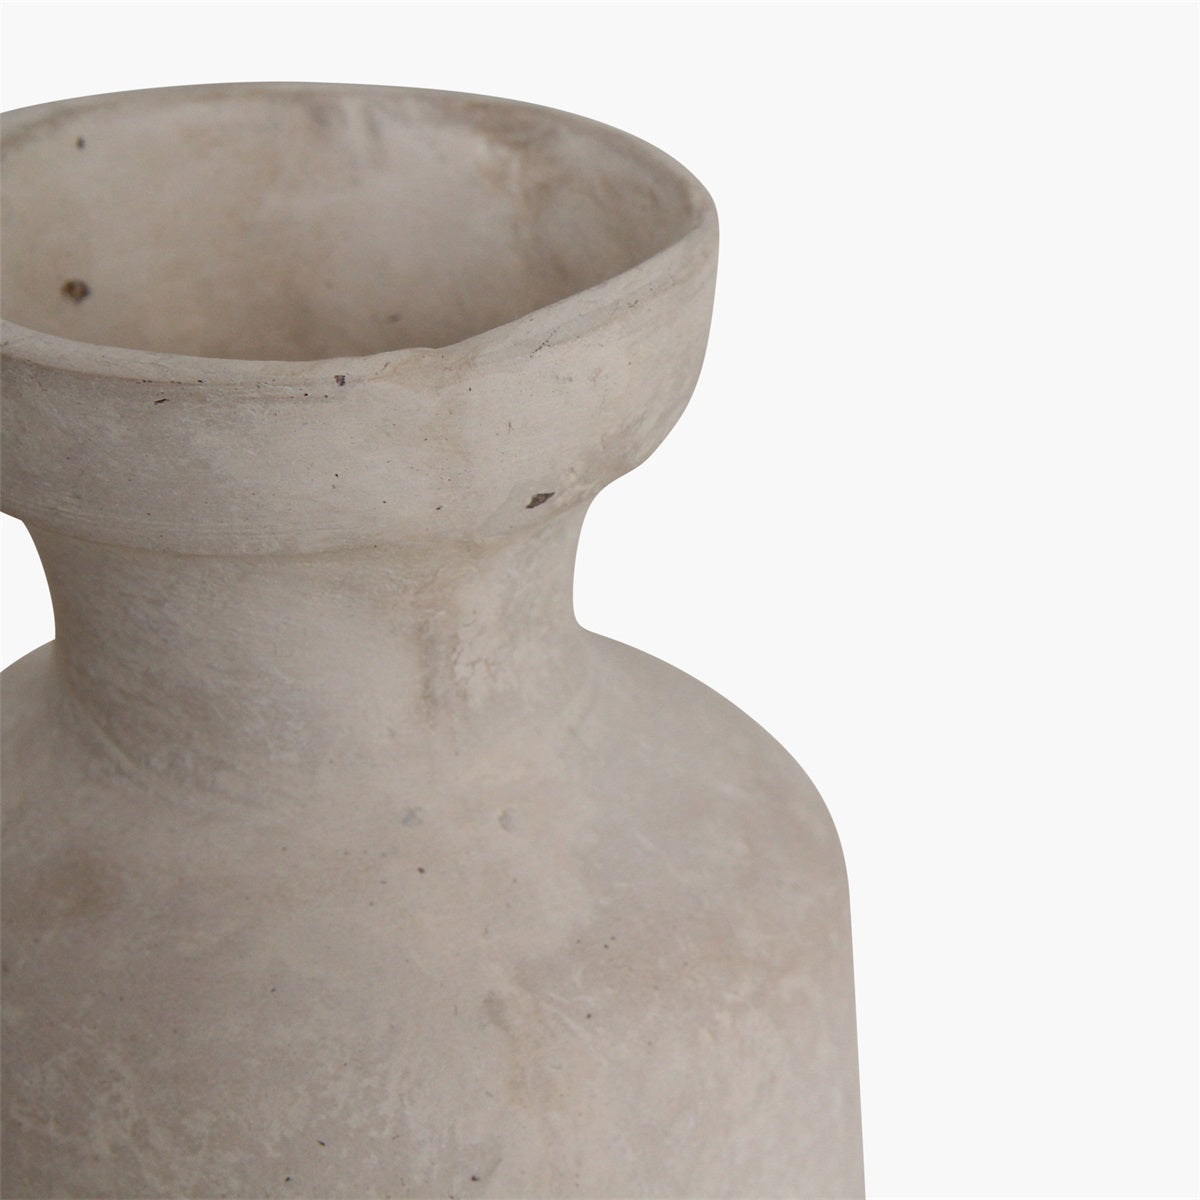 Raw Materials Chalk Vase Rayaro White Papermache and Chalkpowder